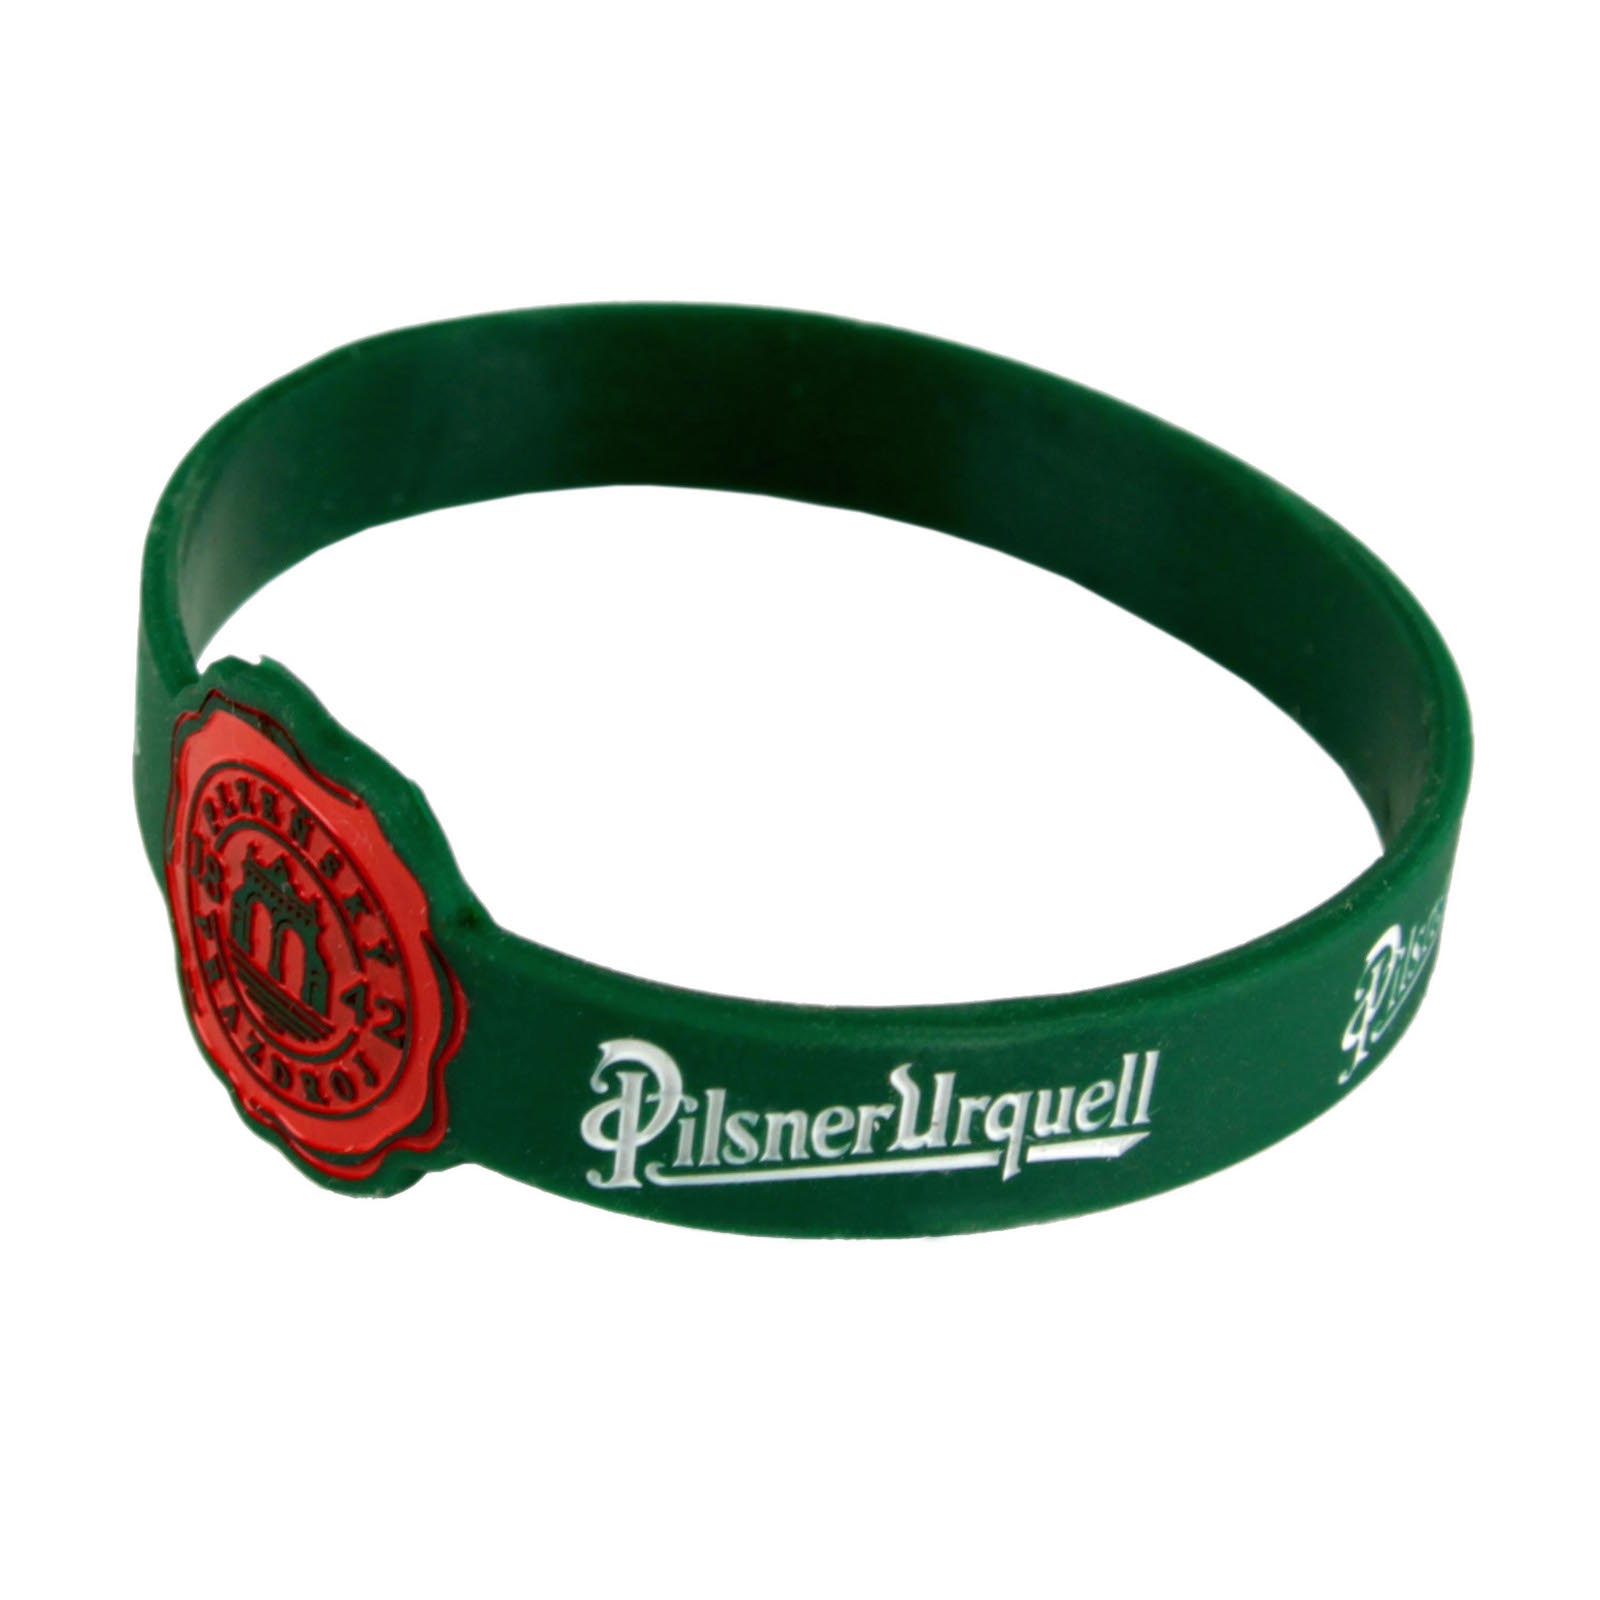 Silk bracelet Pilsner Urquell green